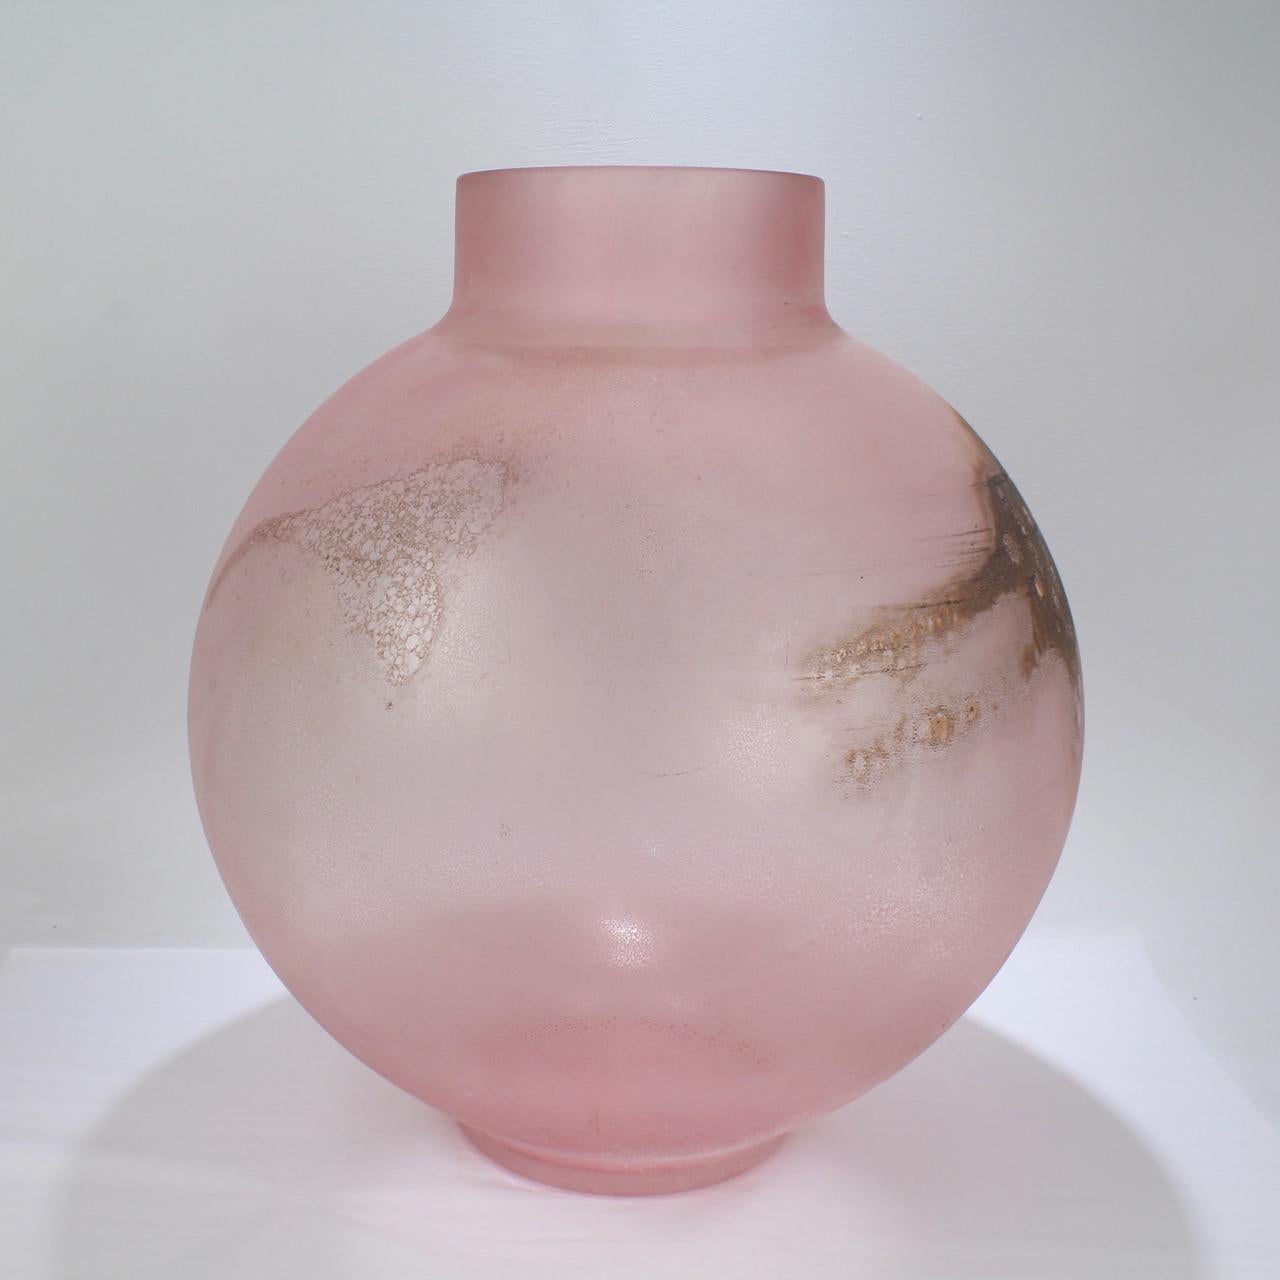 Eine wunderbar große, kugelförmige Murano-Glasvase in Rosa mit braunen Akzenten. Die Vase hat einen unglaublichen Reiz der Memphis School oder Miami der 1980er Jahre. Es ist ein kühnes und beeindruckendes Stück Glas!

Die in der Scavo-Technik